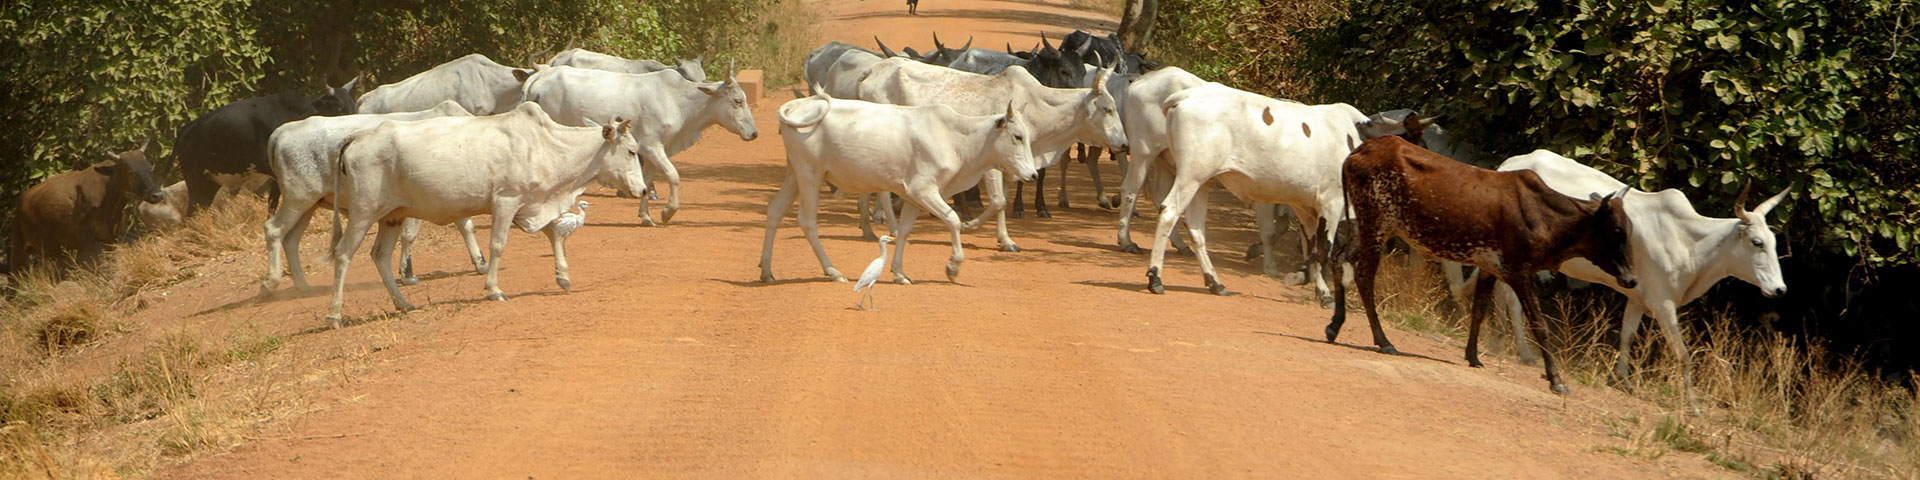 Troupeau de bovins traversant une route sablonneuse.